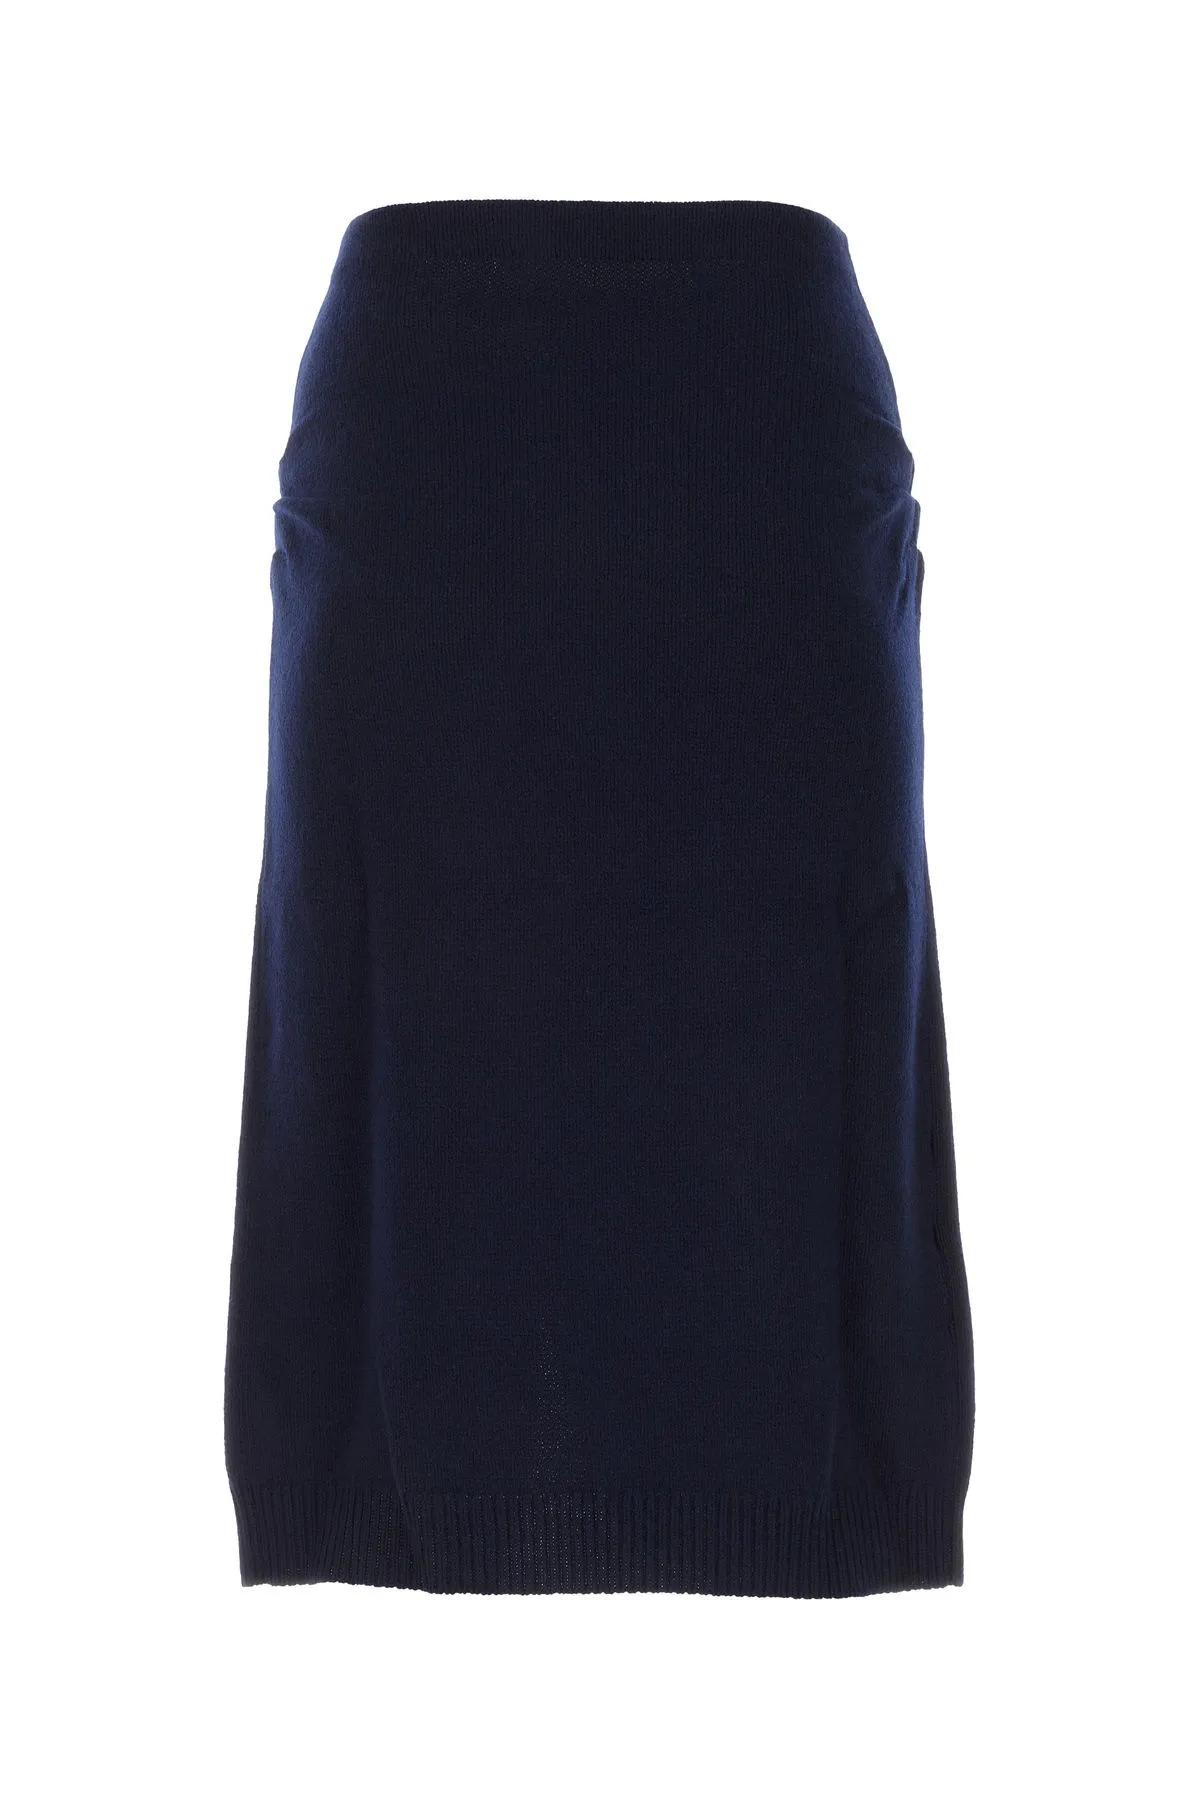 Shop Prada Midnight Blue Wool Blend Skirt